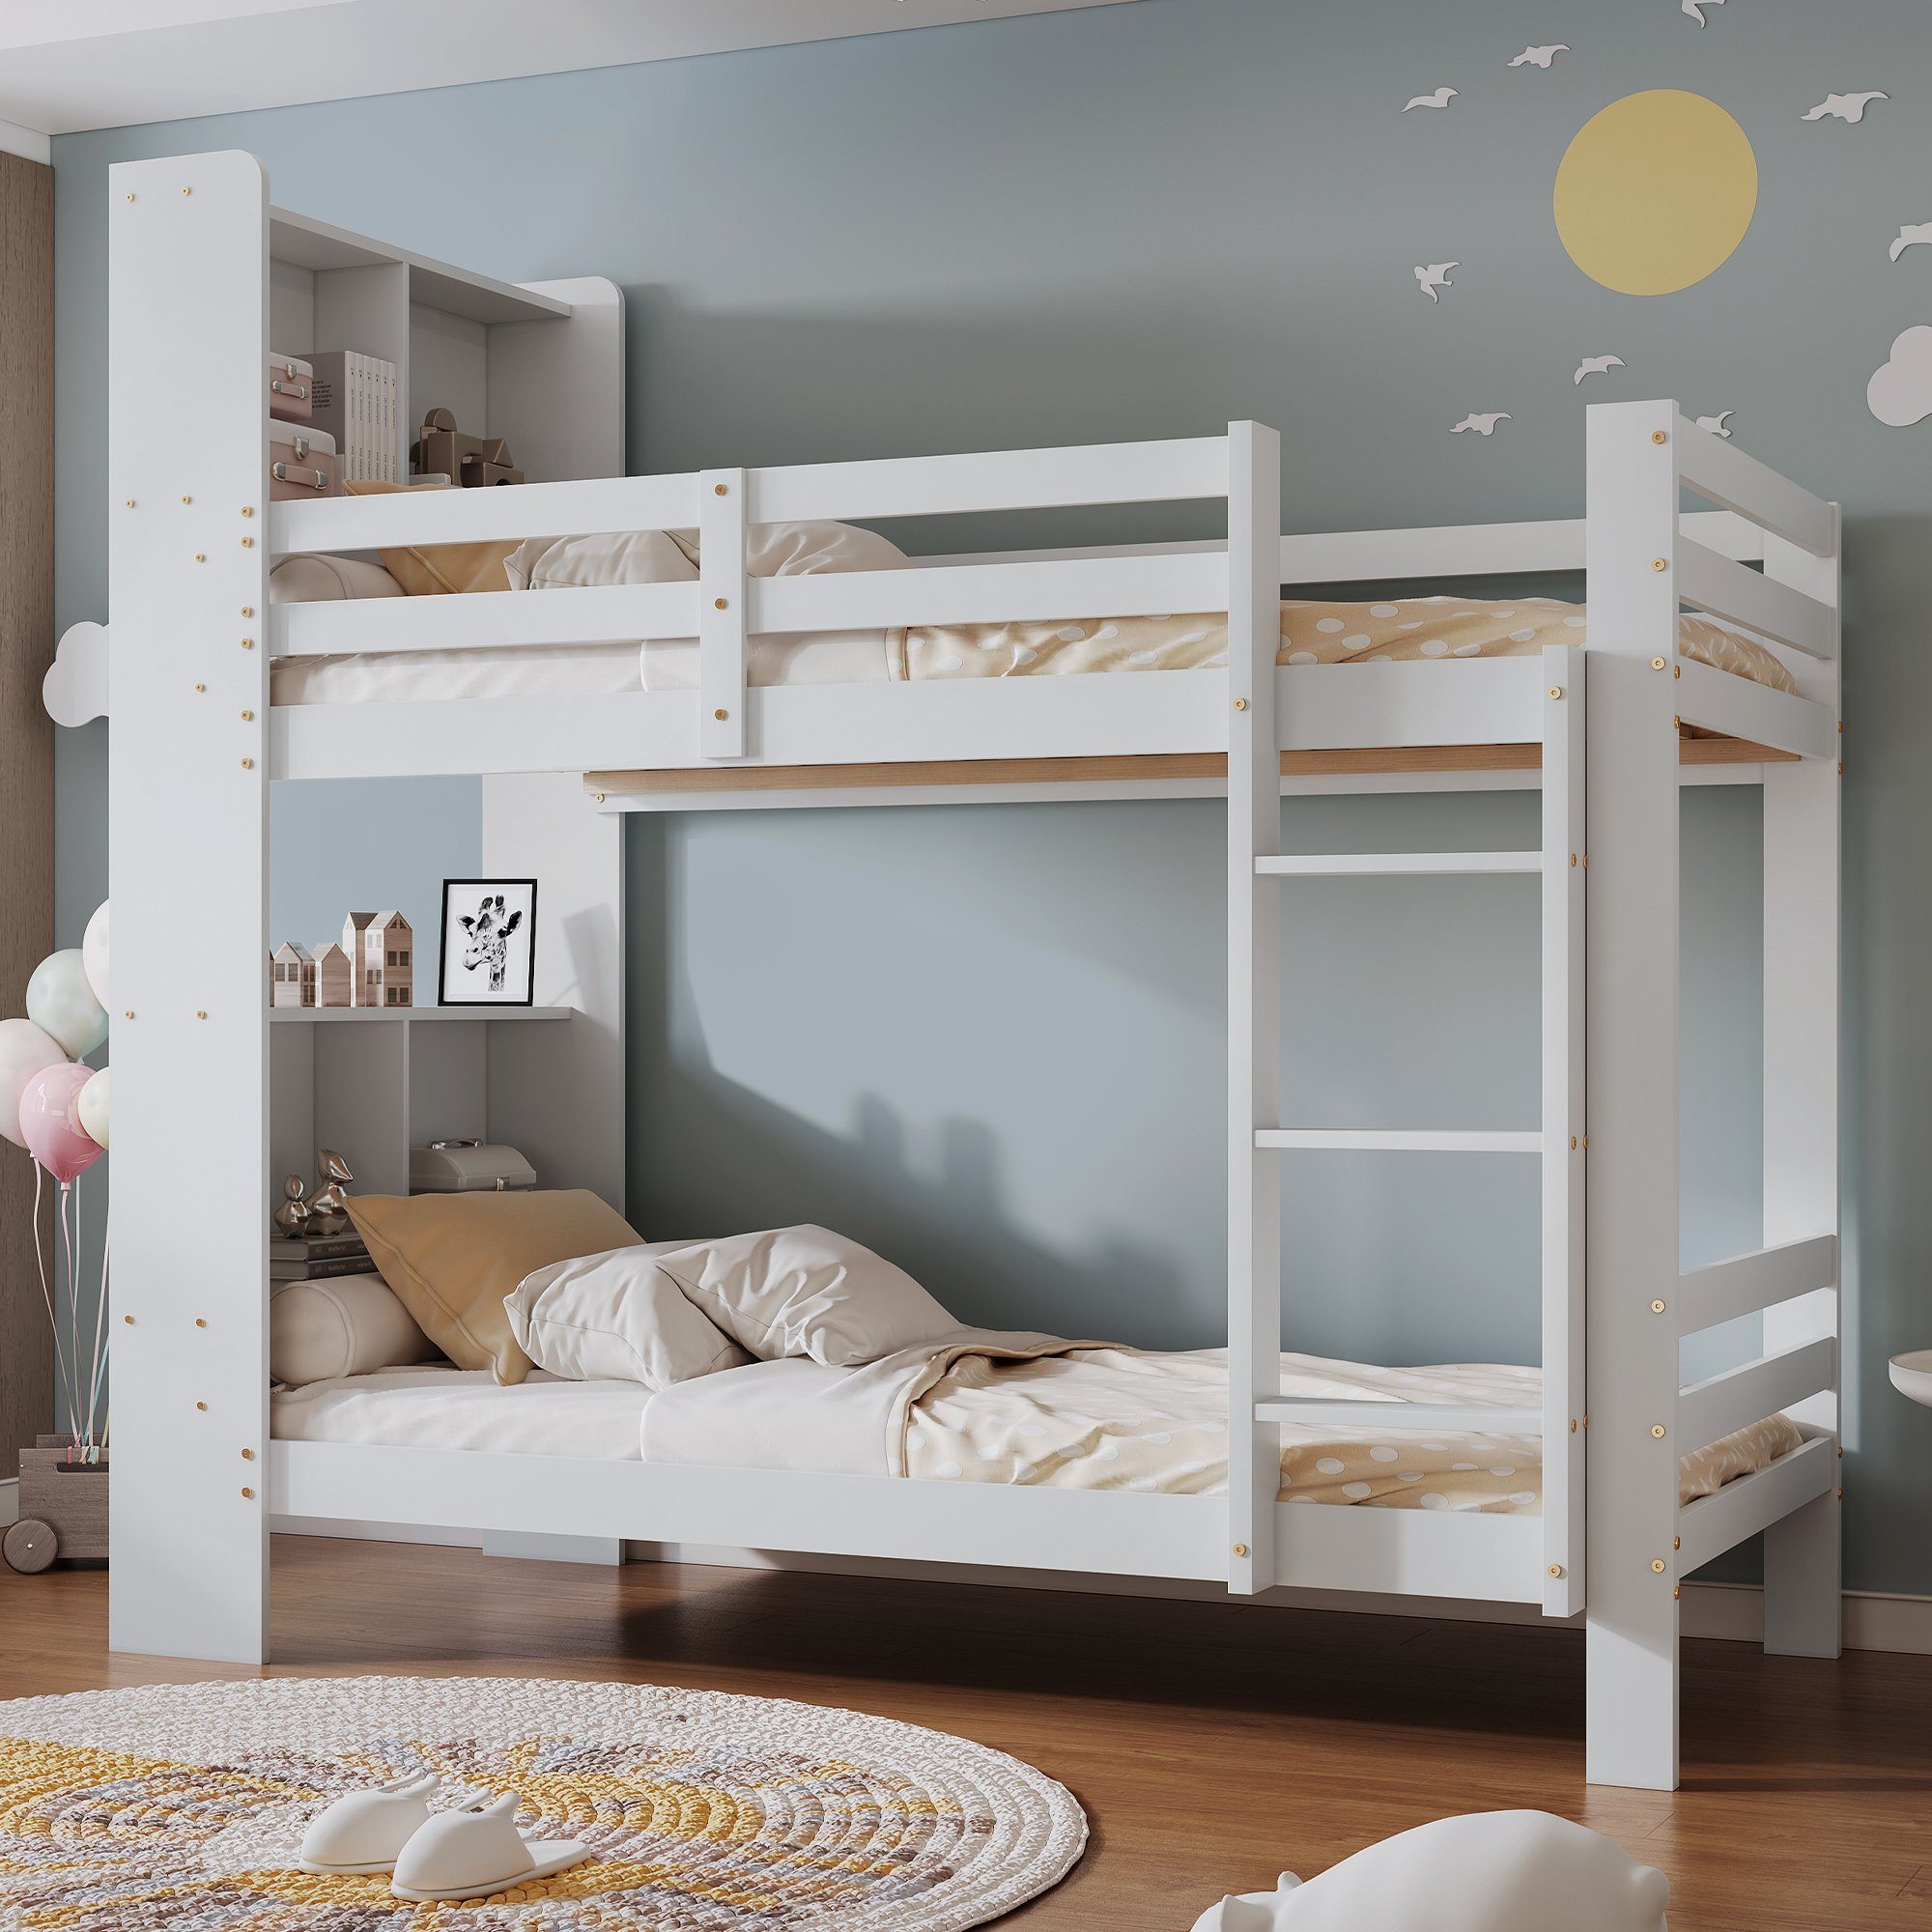 SOFTWEARY Etagenbett Kinderbett mit 2 Schlafgelegenheiten, Lattenrost,  Leiter und Regal (90x200 cm), Holzbett aus Kiefer, Hochbett inkl.  Rausfallschutz